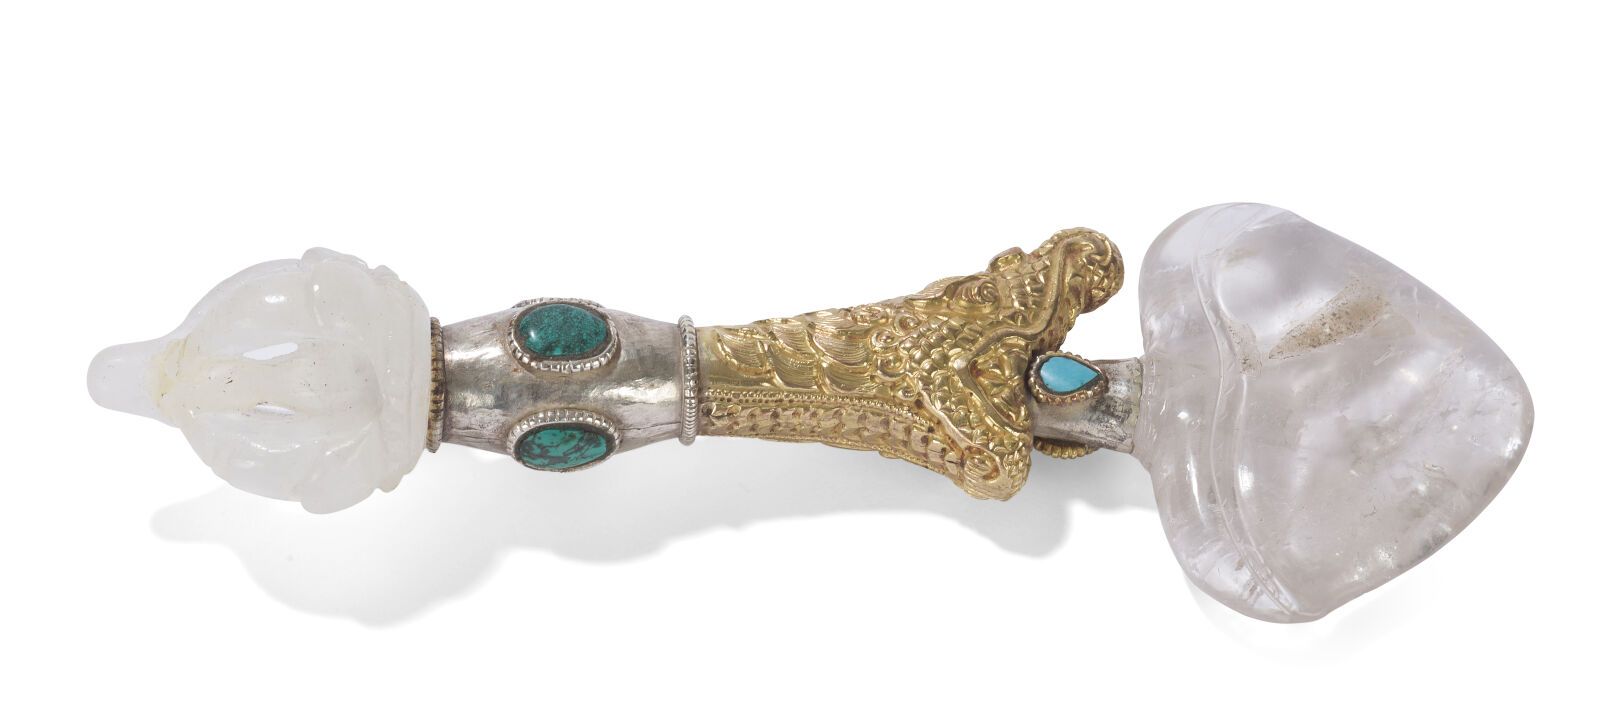 Null 水晶、银和鎏金金属权杖
西藏，20世纪初。
柄部为马卡拉头的形状，下部为半金刚杵的形状。
长：20.5厘米。
(断裂/粘连）。